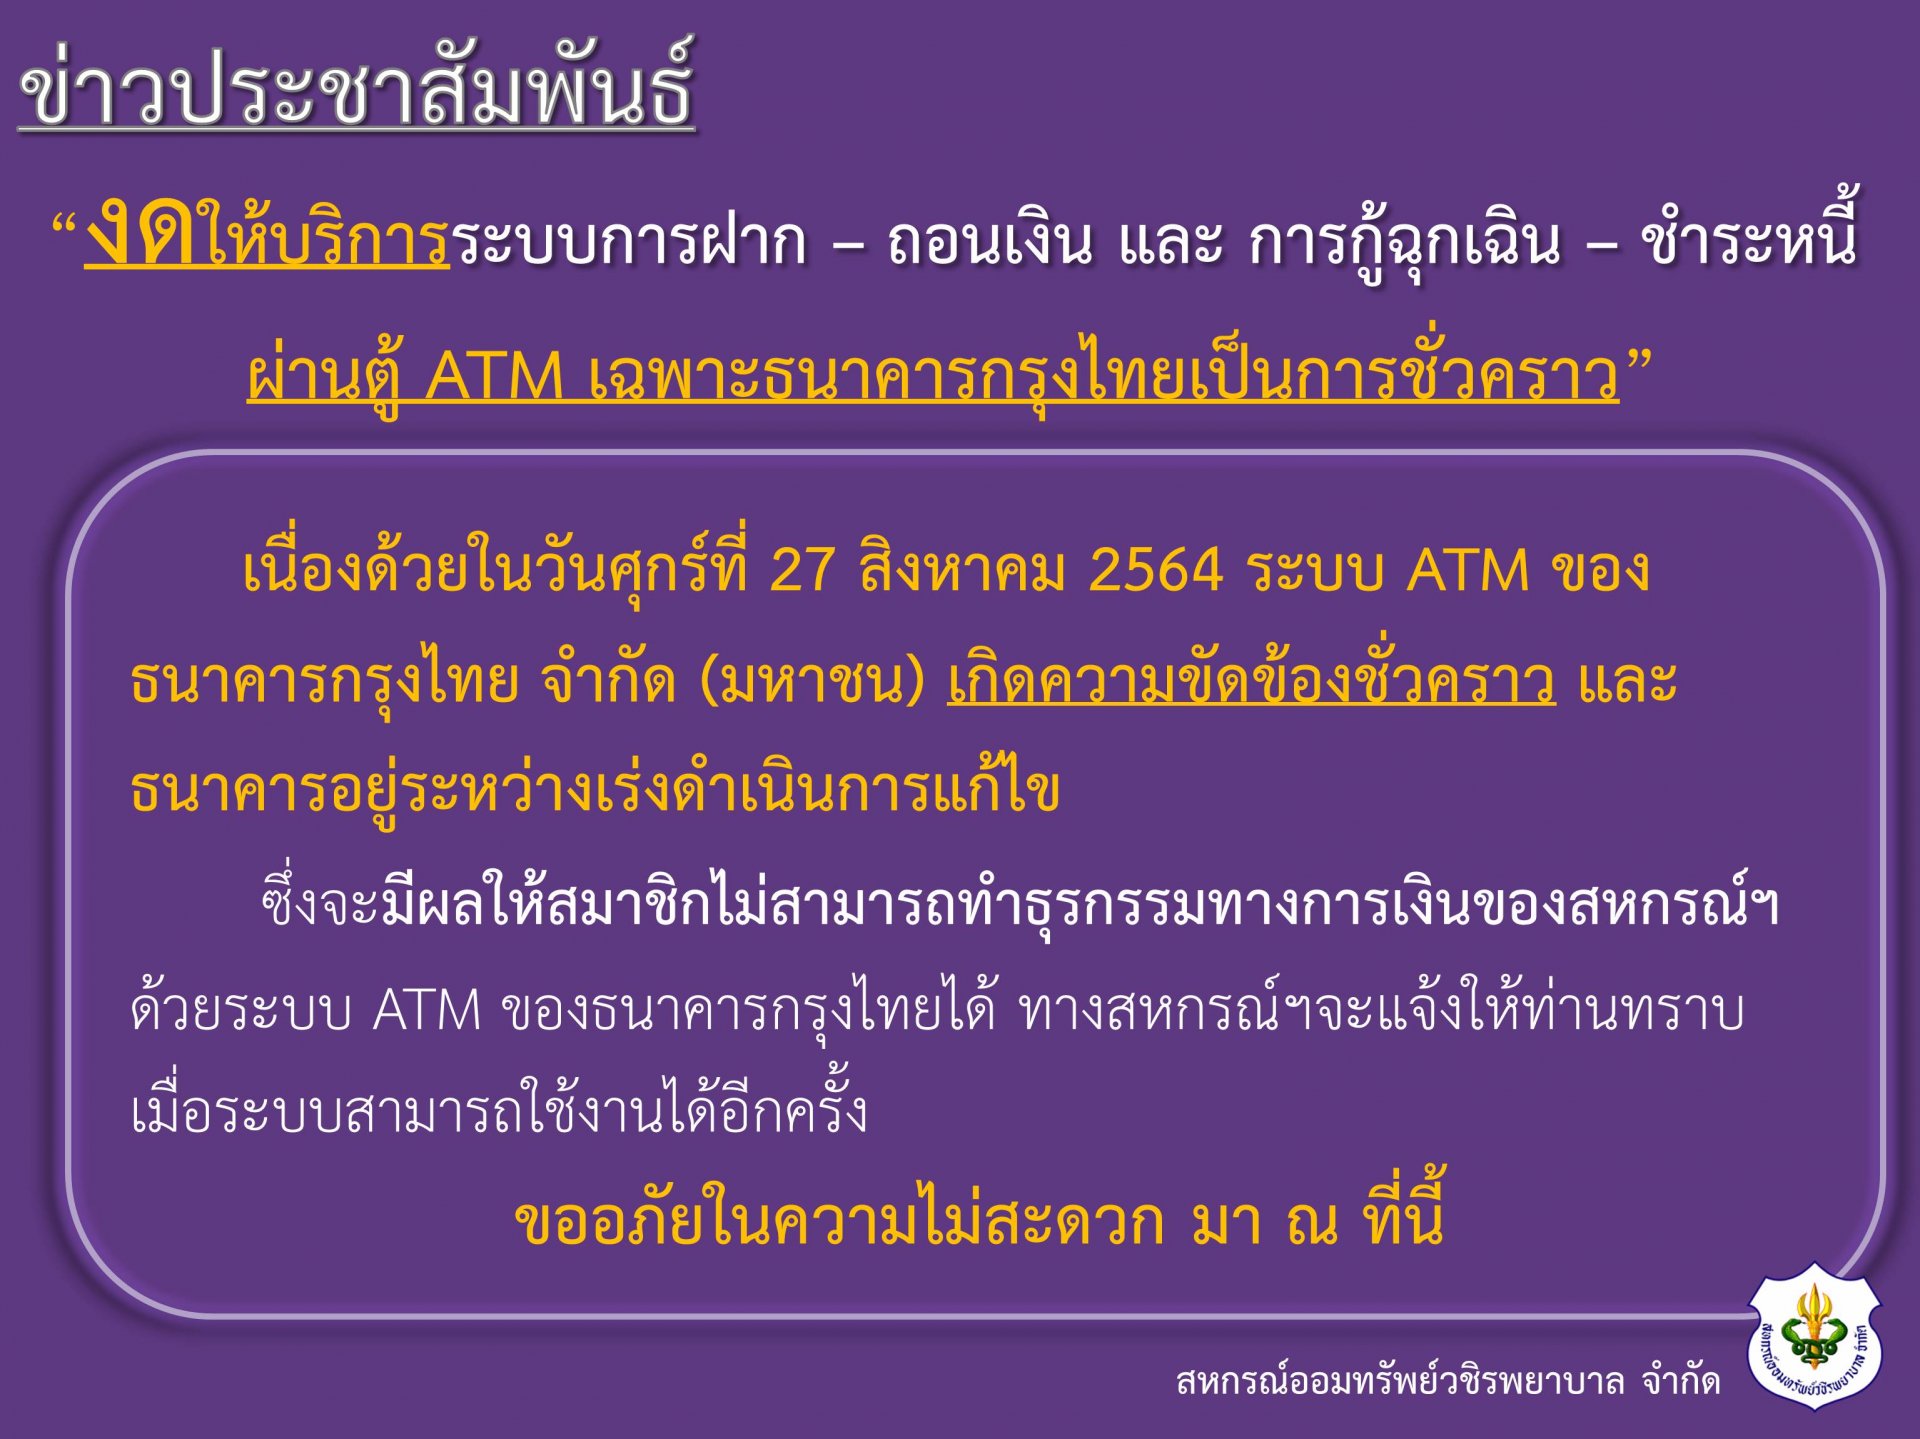 งดให้บริการระบบการฝาก – ถอนเงิน และ การกู้ฉุกเฉิน – ชำระหนี้ ผ่านตู้ ATM เฉพาะธนาคารกรุงไทยเป็นการชั่วคราว